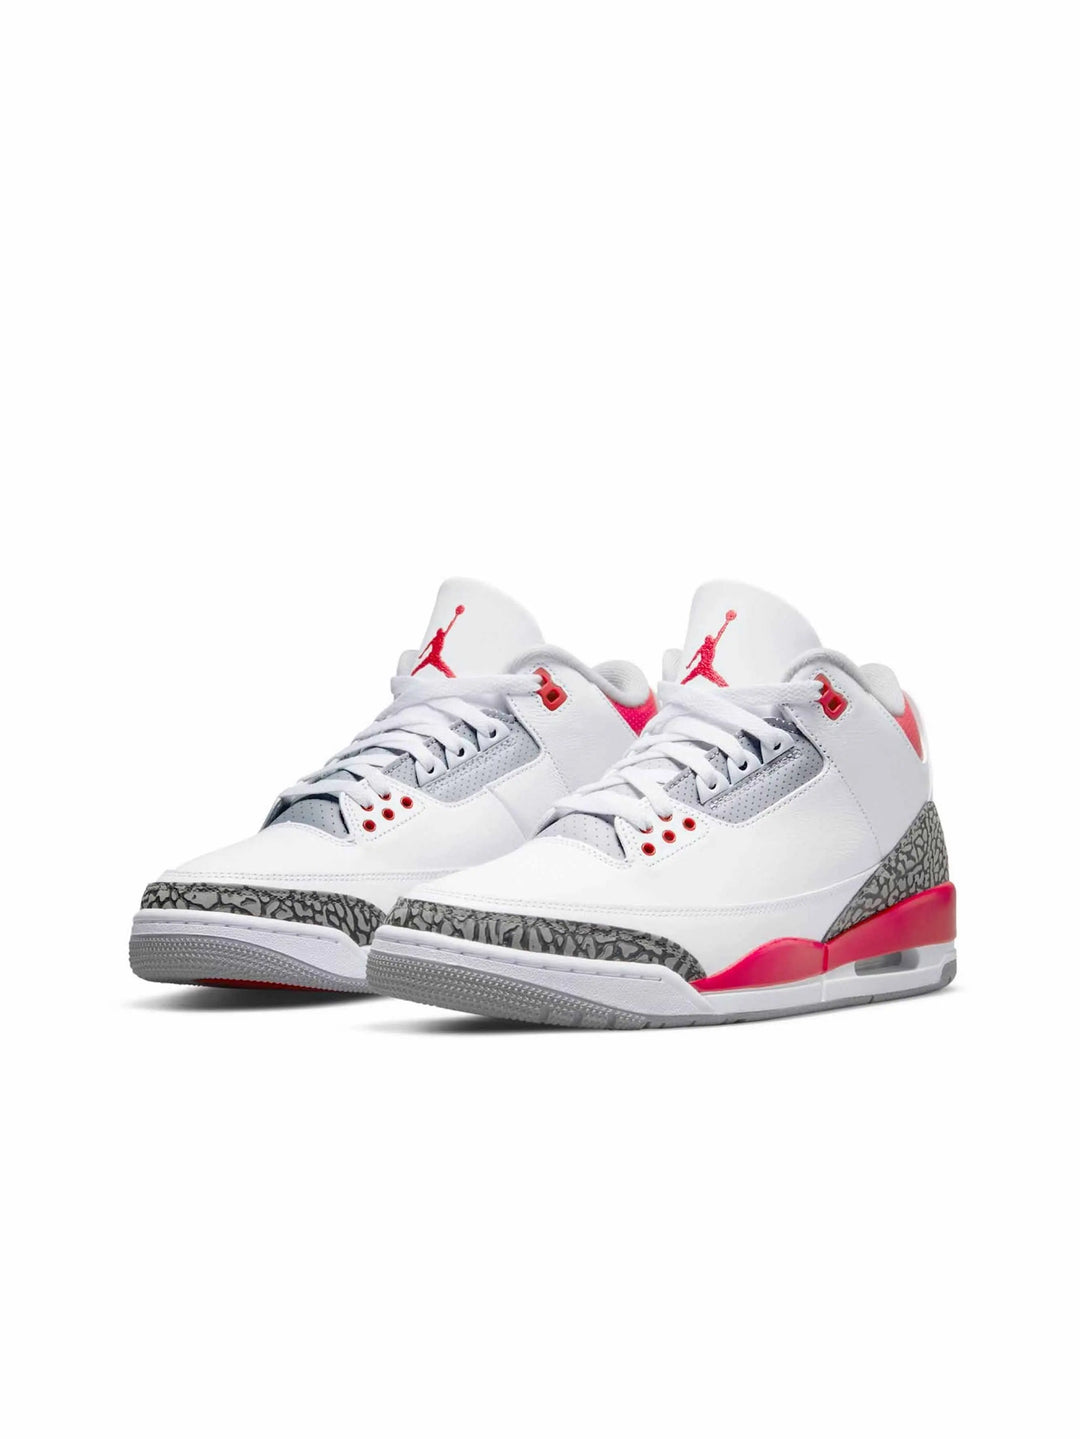 Nike Air Jordan 3 Retro Fire Red (2022) - Prior